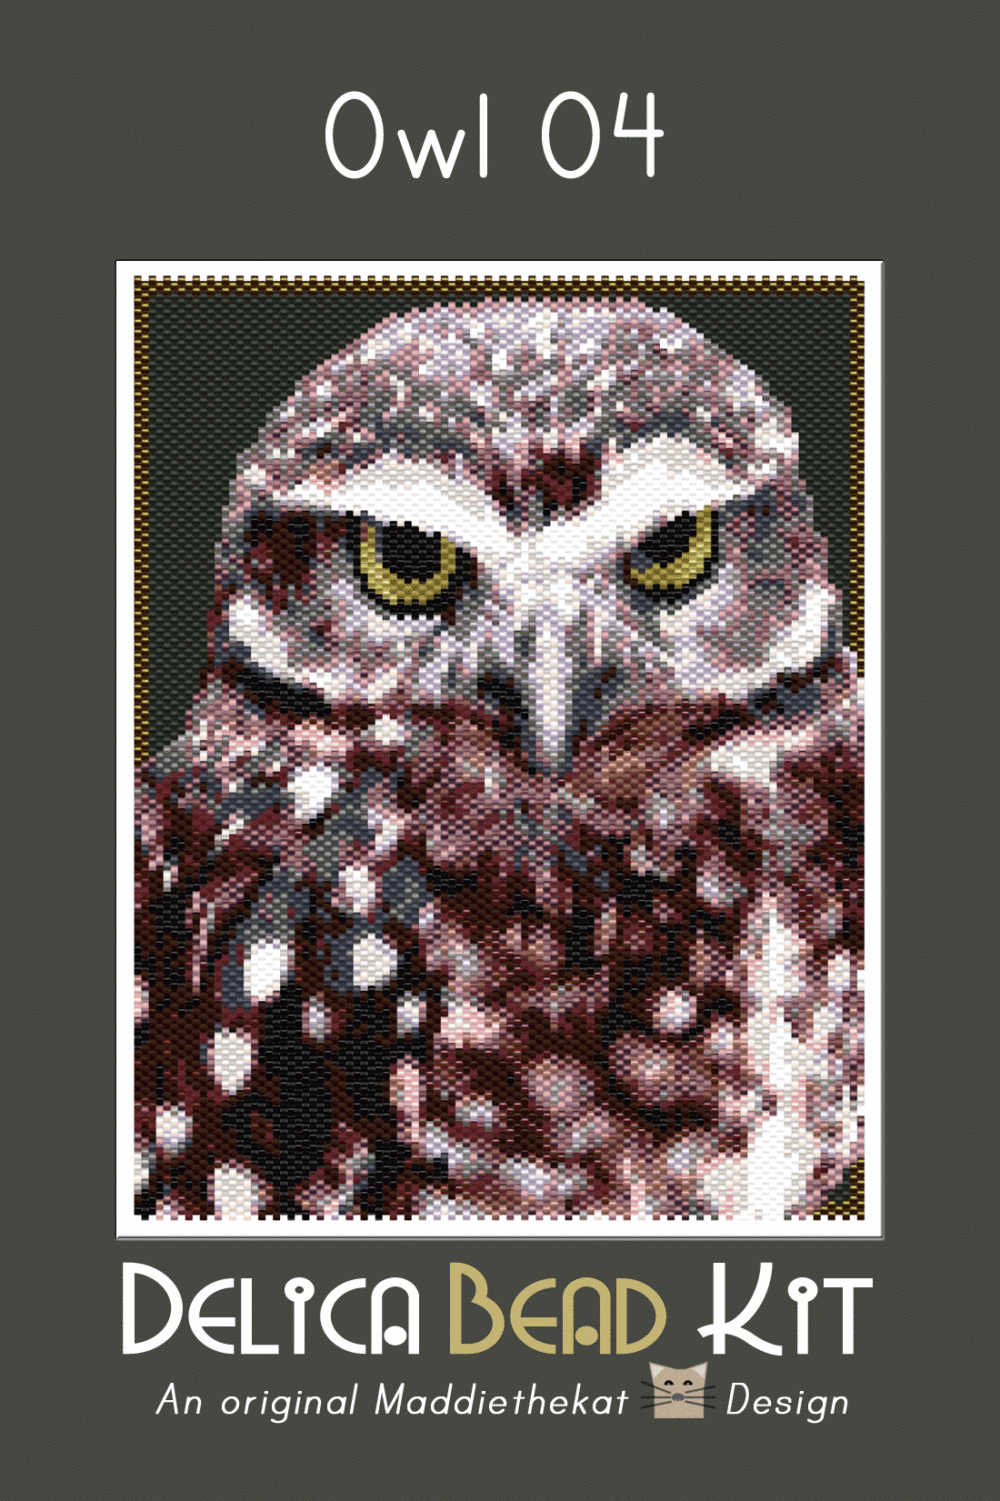 Owl 04 Larger Peyote Bead Pattern PDF or Bead Kit